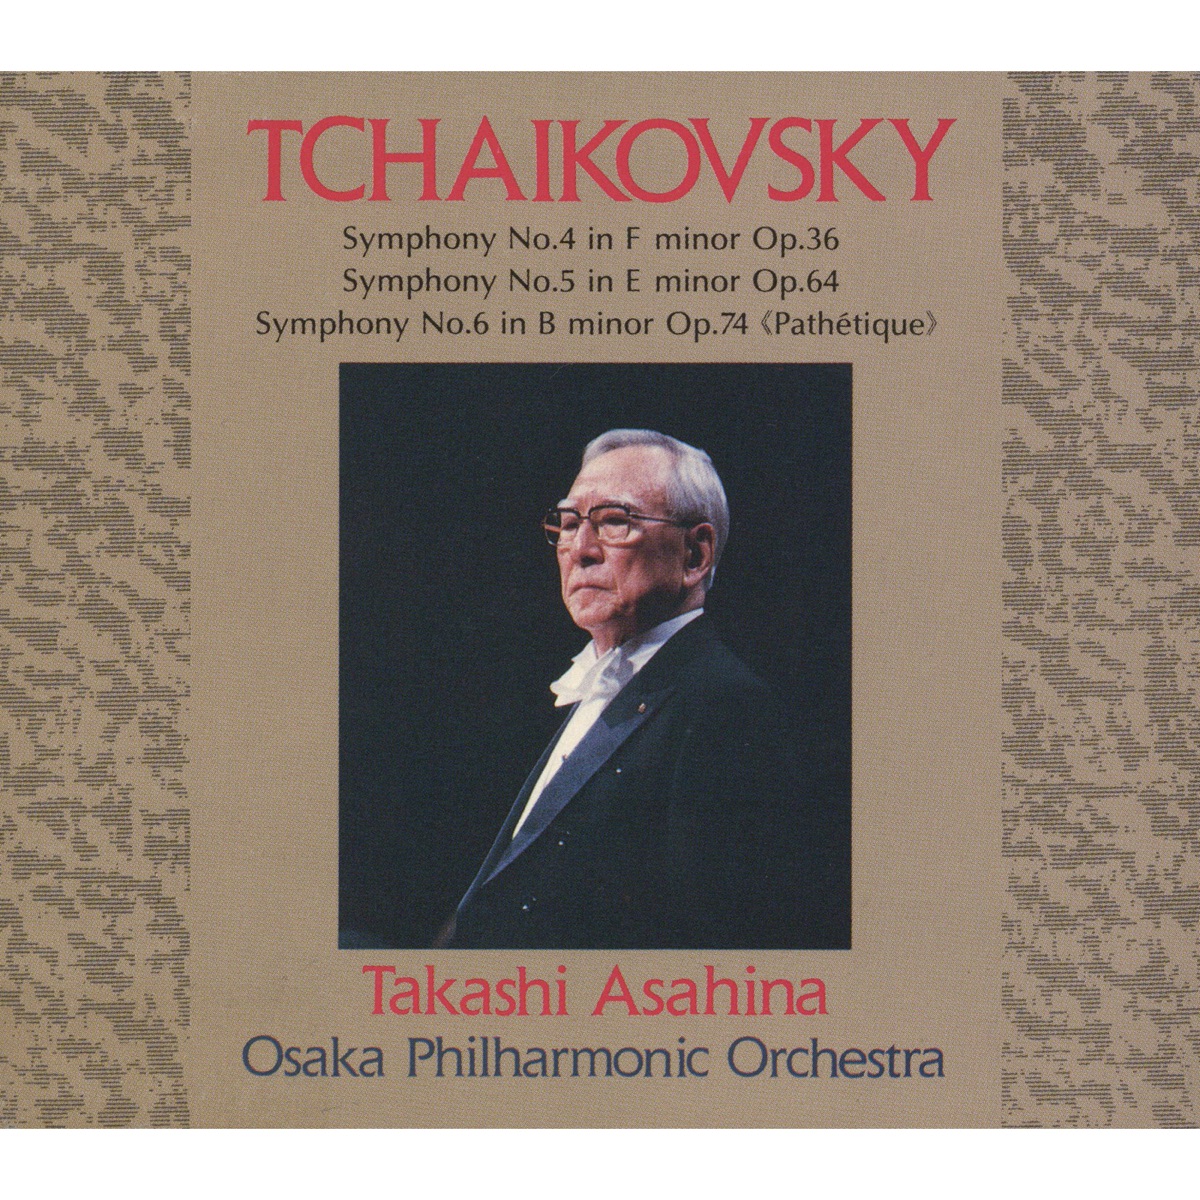 ‎Tchaikovsky : Symphonies Nos. 4 - 6 - Album by 朝比奈隆(指揮)大阪 